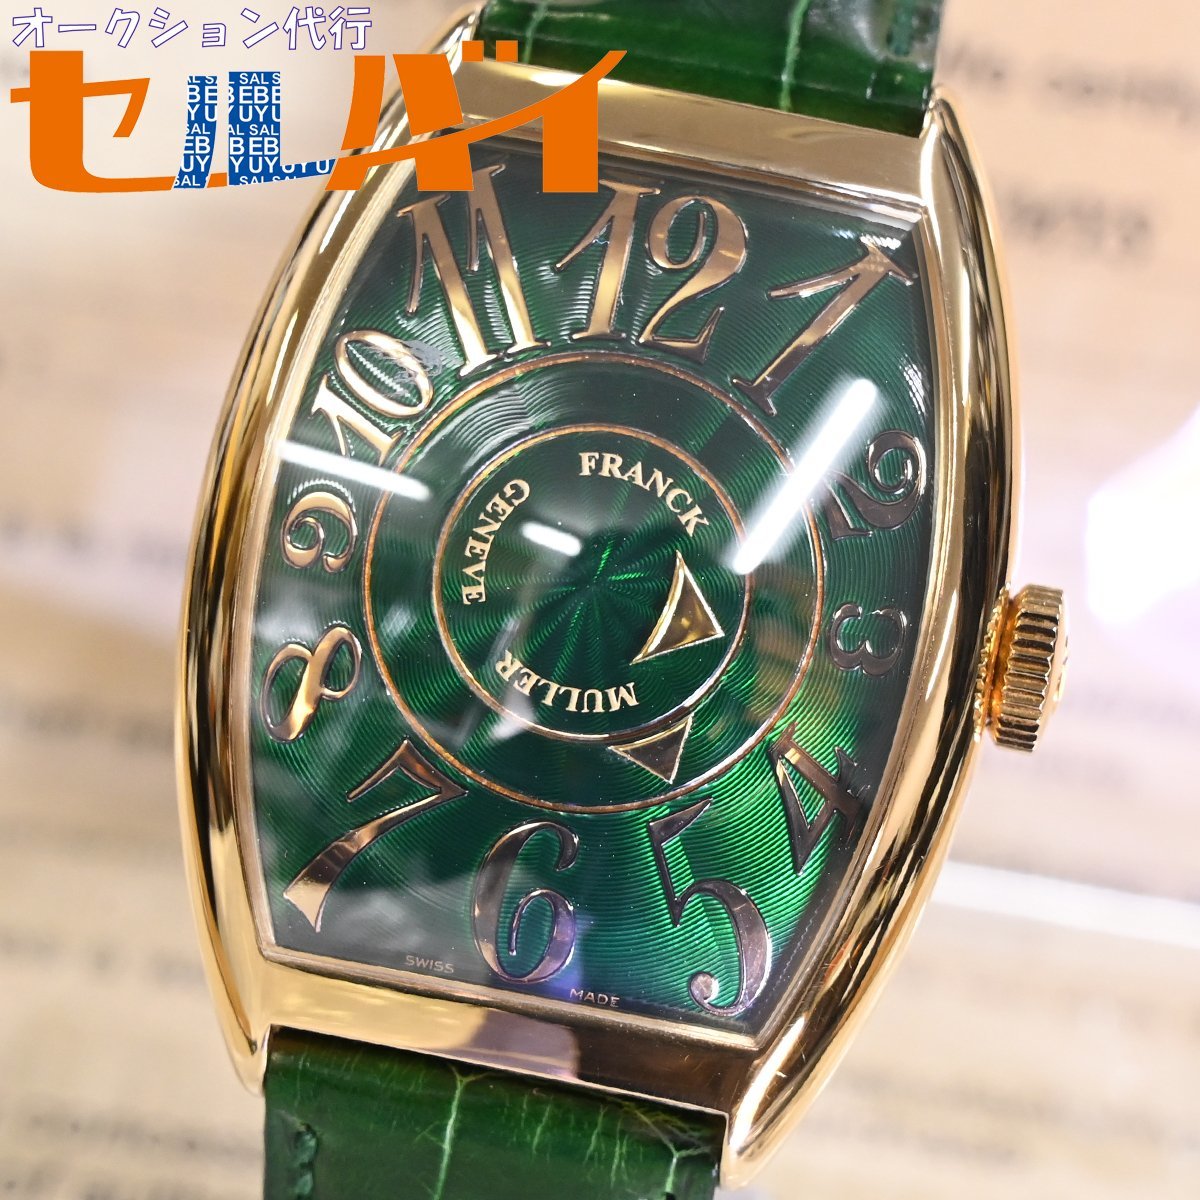 本物 極上品フランクミュラー 国内正規品 K18ゴールド エメラルドエマイユ ダブルミステリー メンズウォッチ 金無垢自動巻腕時計 箱 保証書